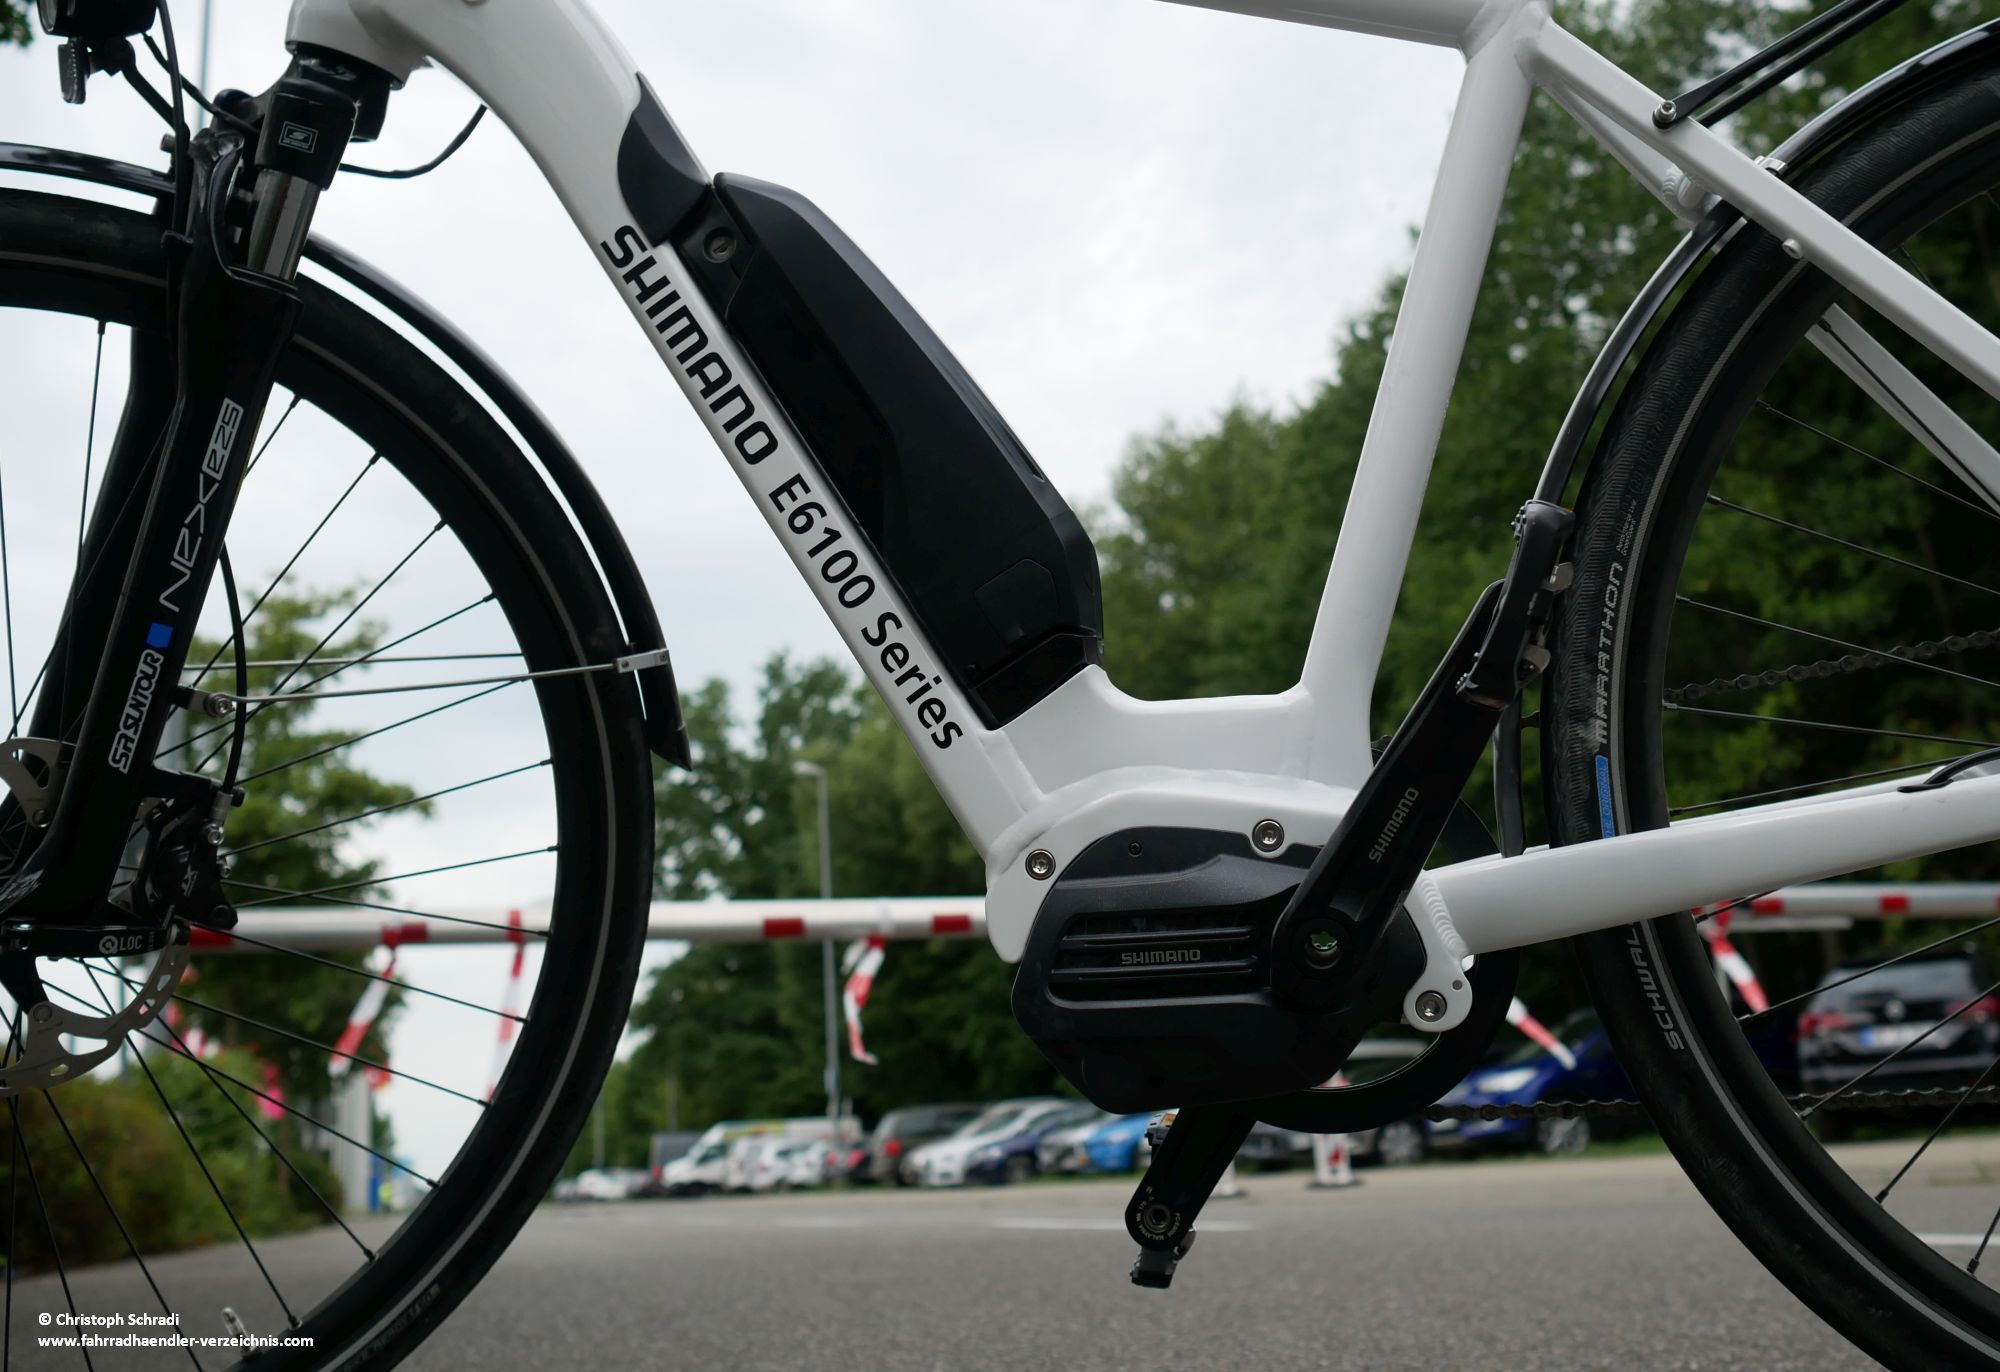 Der Steps E6100 von Shimano wurde 2018 erstmalig präsentiert und richtet sich an Trekkingrad und City E-Biker - er bietet bei 2,9 kg eine maximale Leistung von 60 Nm